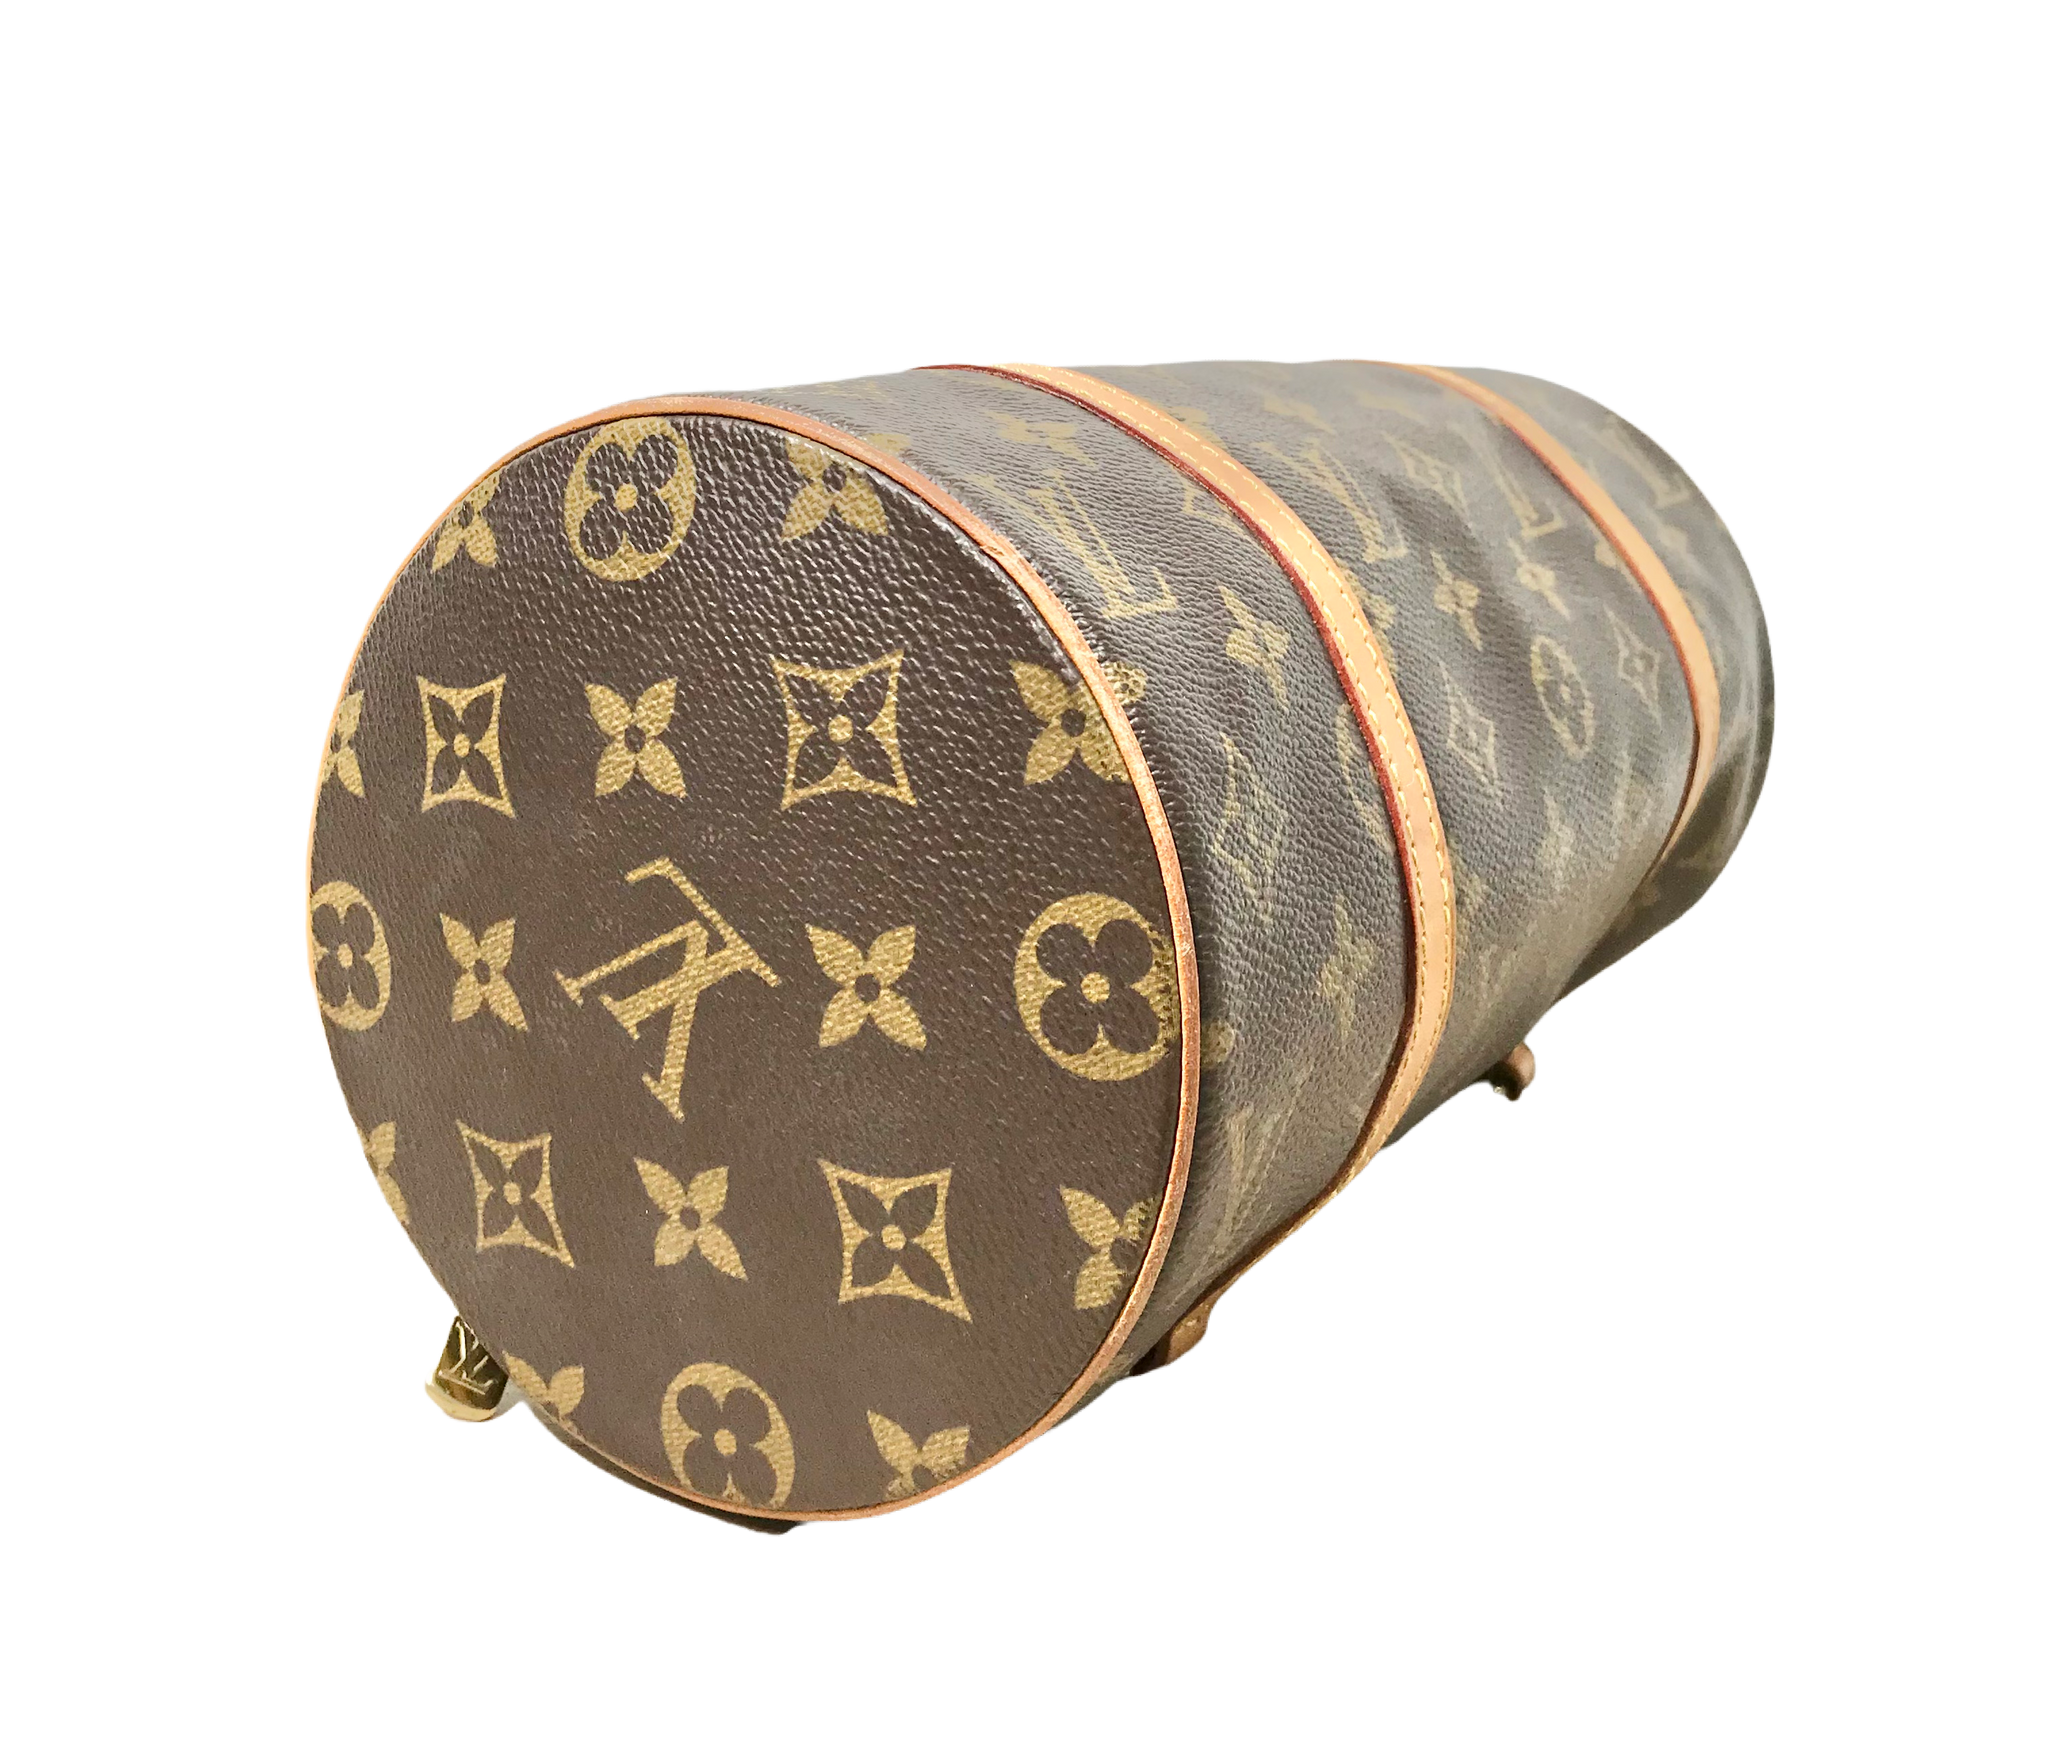 Auth LOUIS VUITTON Papillon 26 M51386 Monogram SP0023 Handbag